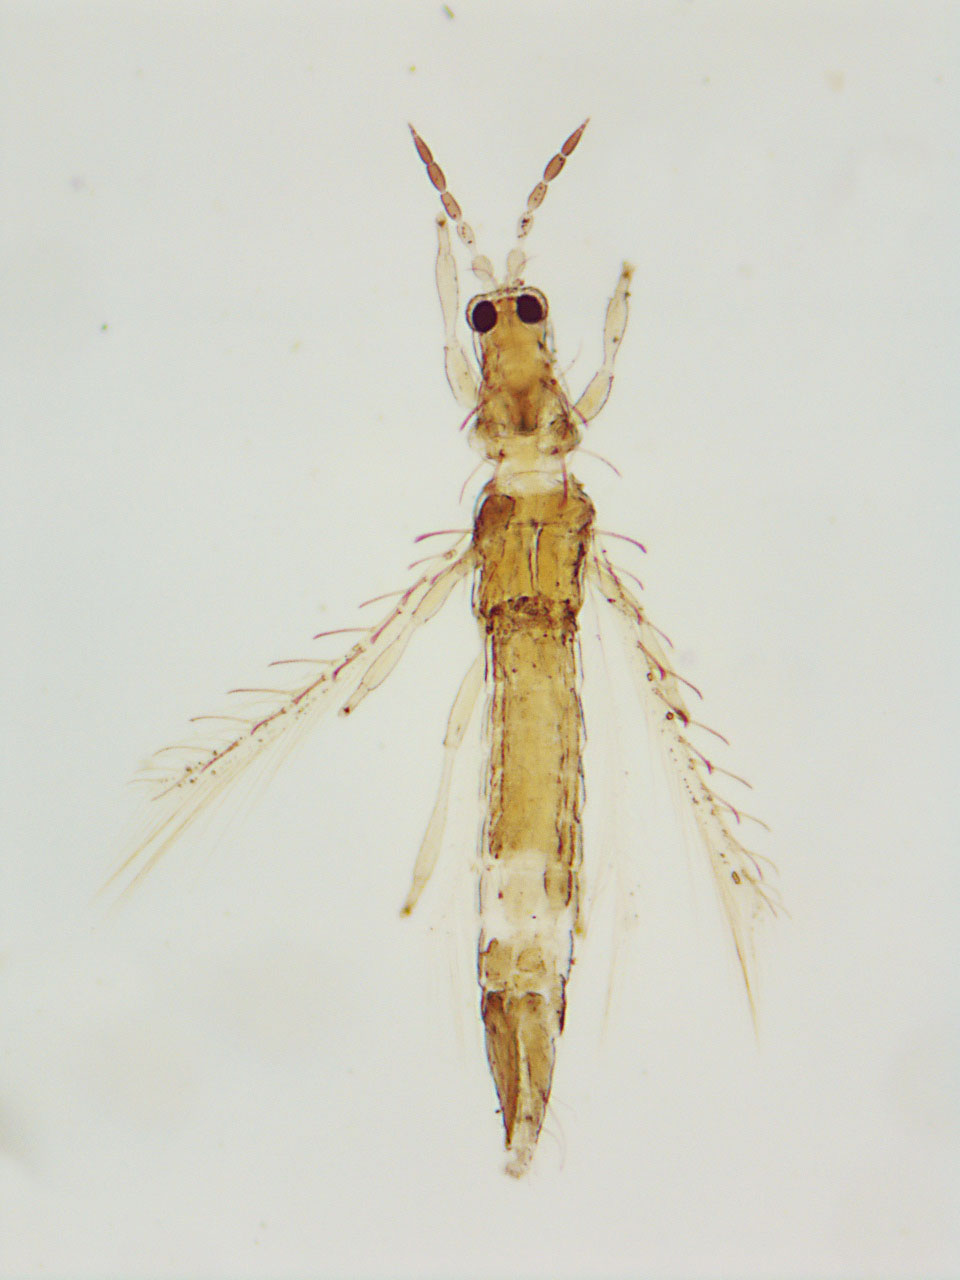 Coremothrips nubilicus